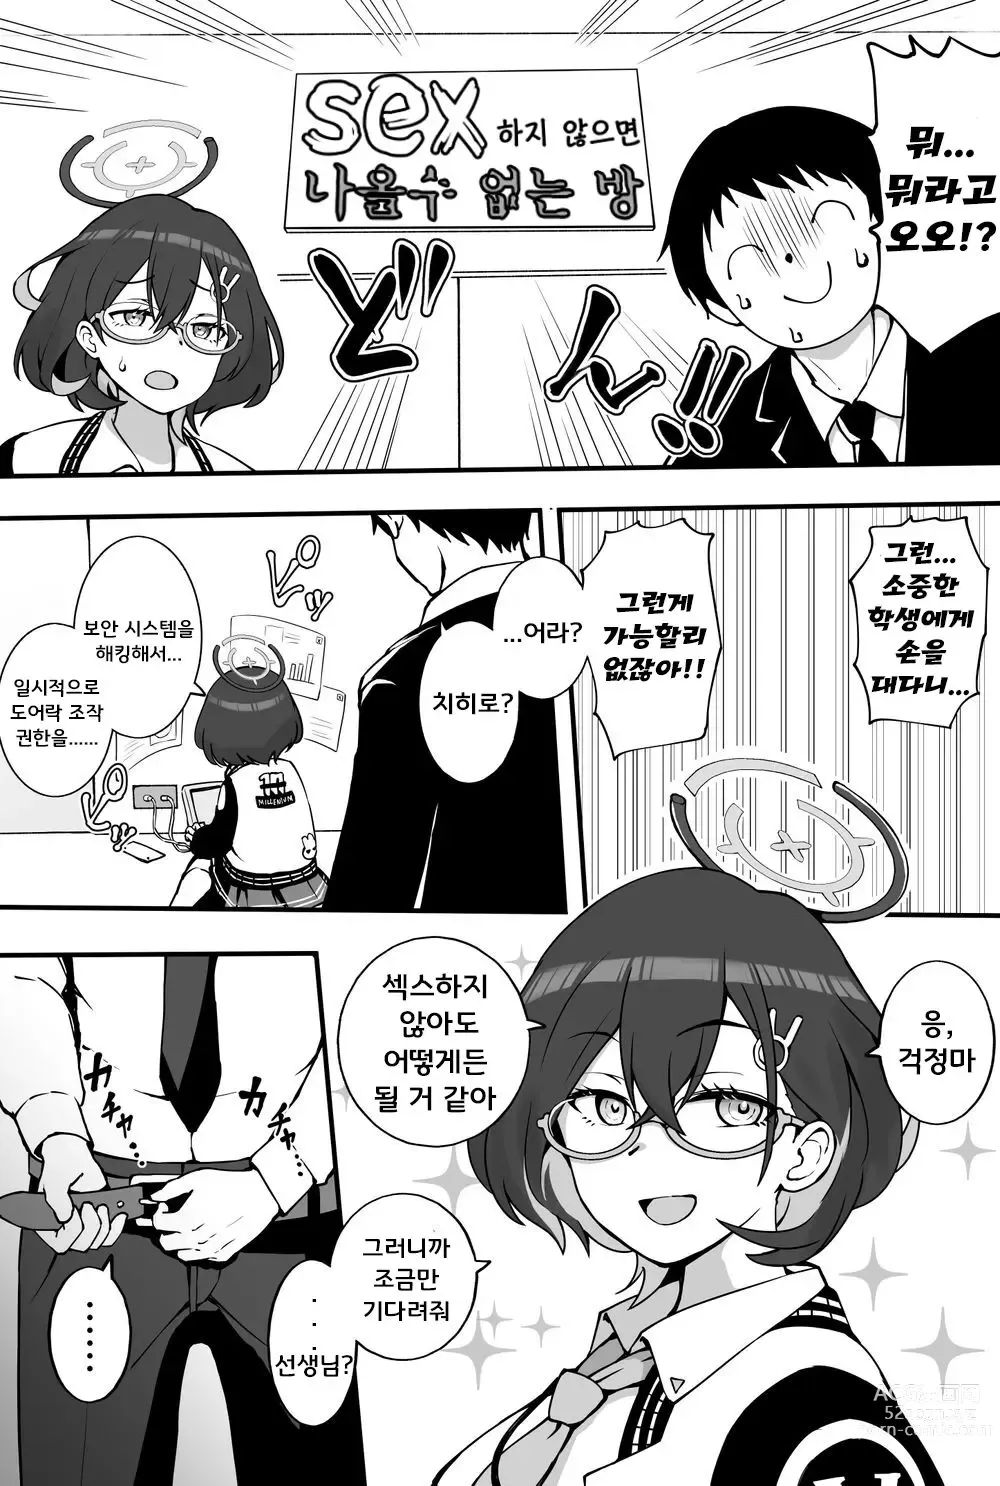 Page 1 of doujinshi 치히로와 SEX하지 않으면 나갈 수 없는 방